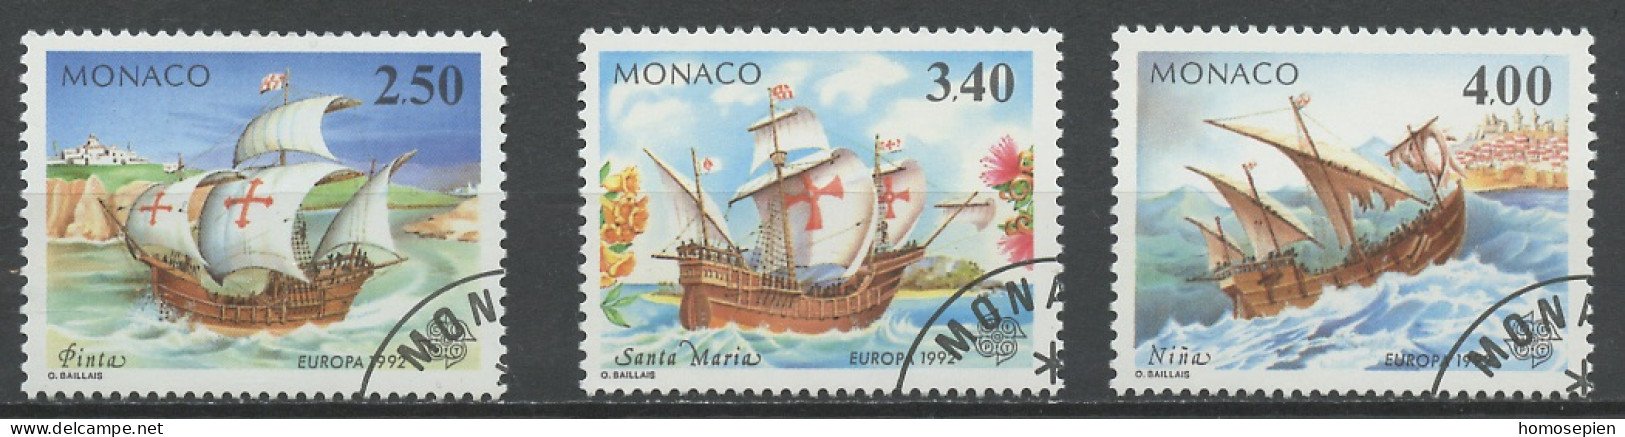 Monaco 1992 Y&T N°1825 à 1827 - Michel N°2070 à 2072 (o) - EUROPA - Usados